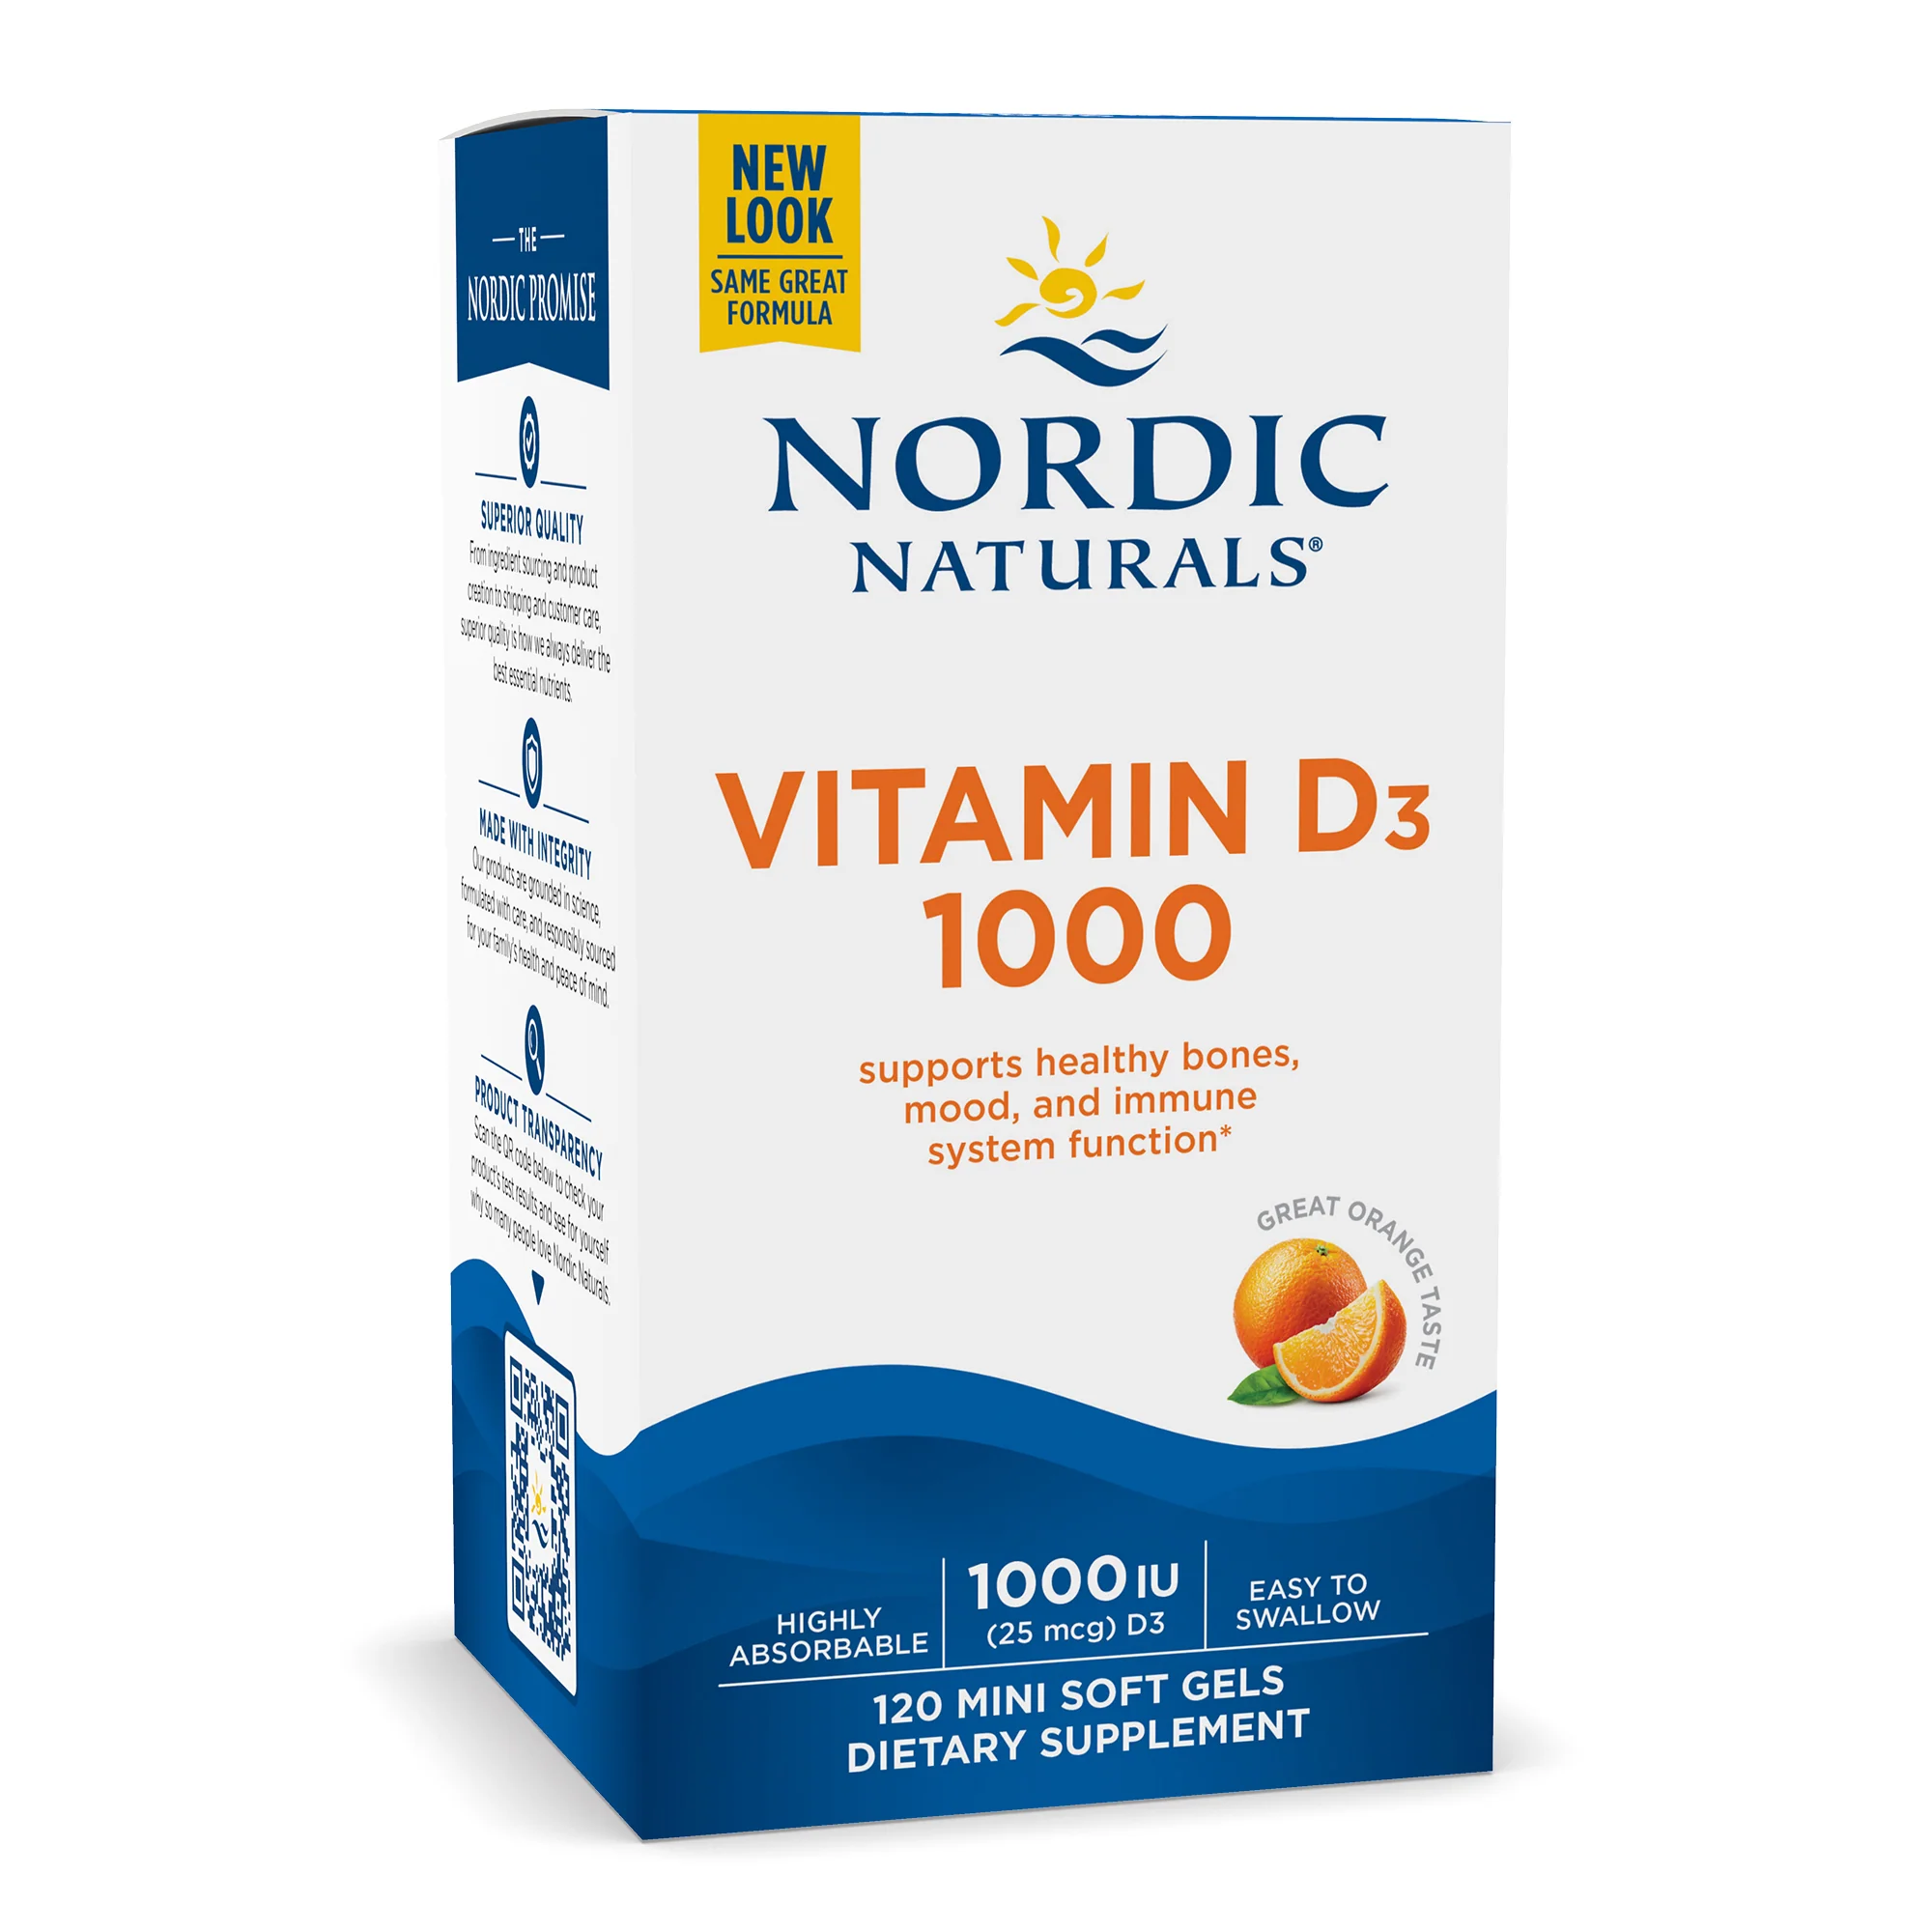 Vitamin D3 (1000) Soft Gels